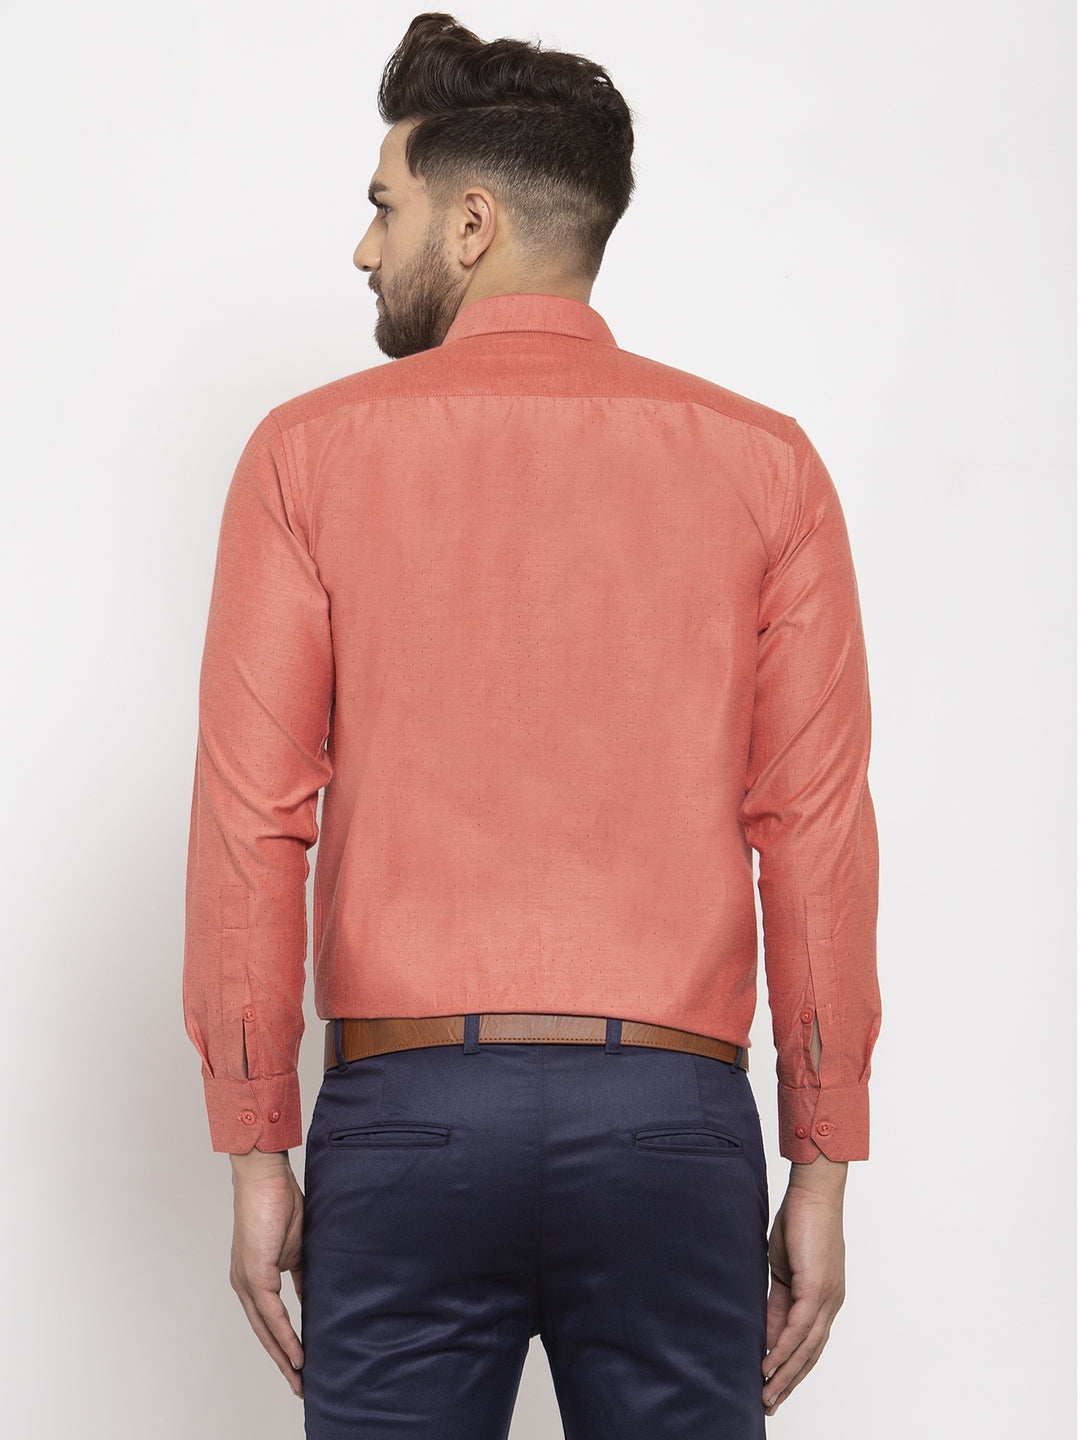 Men's Orange Cotton Polka Dots Formal Shirt's ( SF 761Keshar ) - Jainish